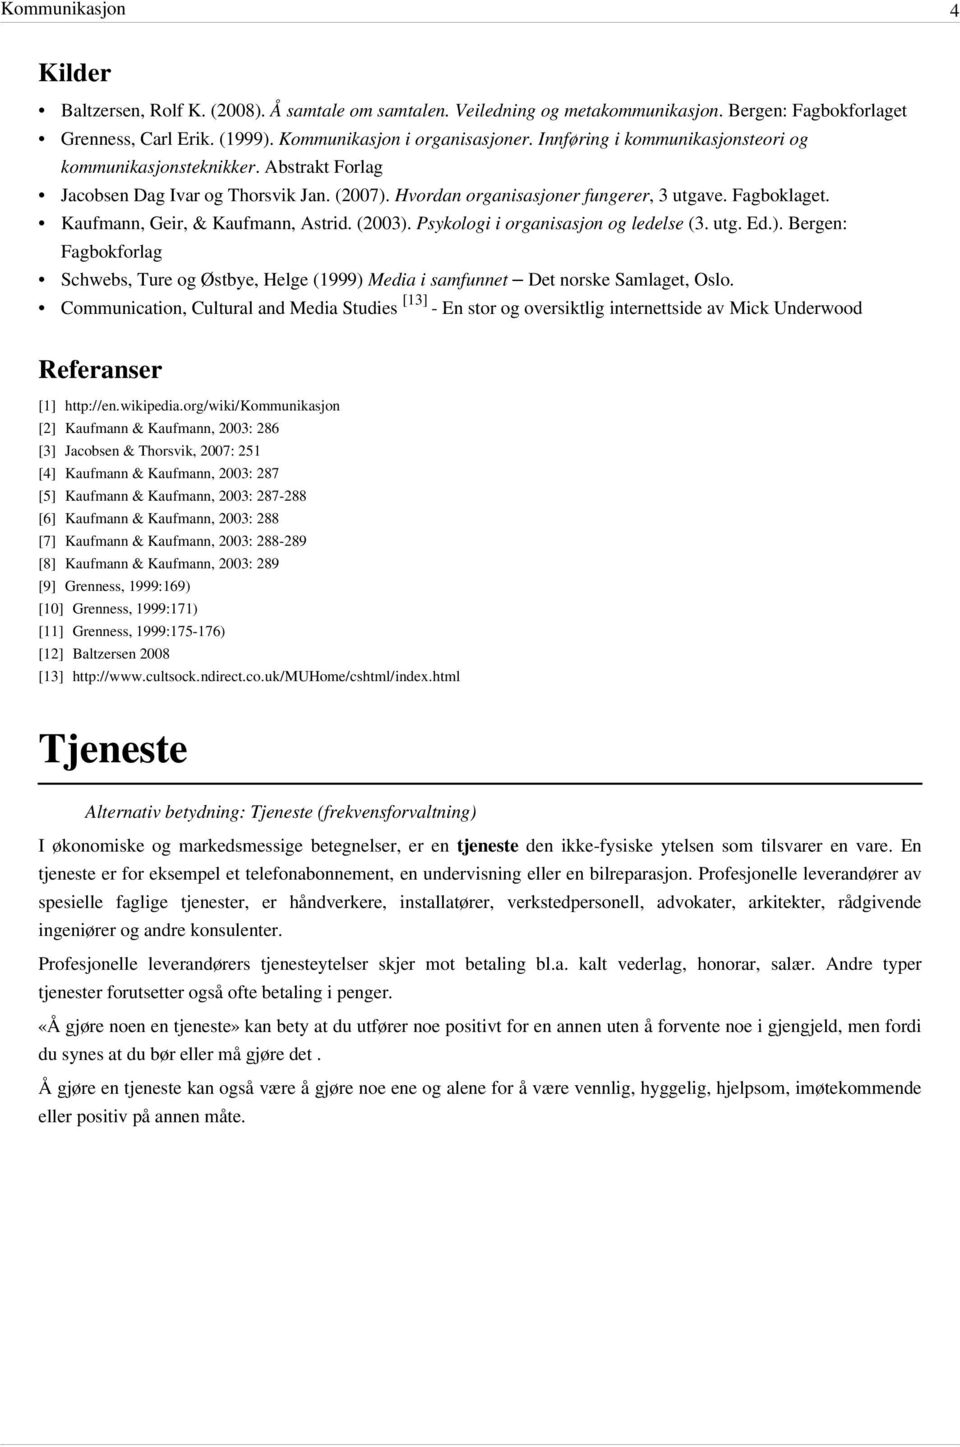 Kaufmann, Geir, & Kaufmann, Astrid. (2003). Psykologi i organisasjon og ledelse (3. utg. Ed.). Bergen: Fagbokforlag Schwebs, Ture og Østbye, Helge (1999) Media i samfunnet Det norske Samlaget, Oslo.